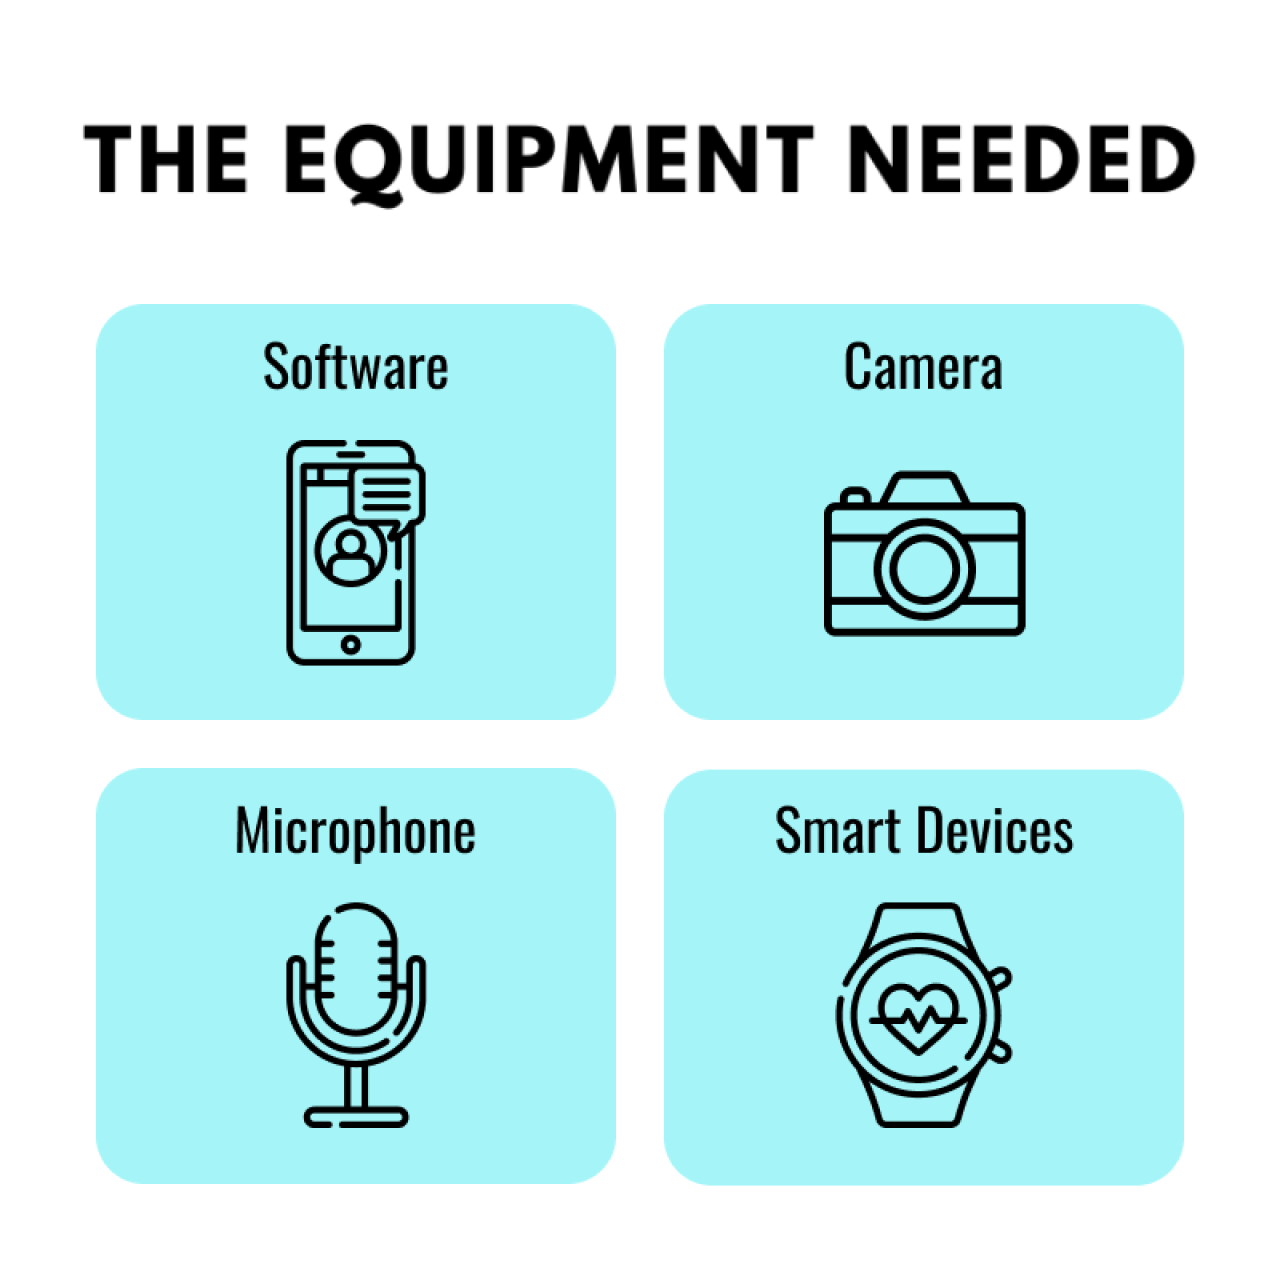 Telemedicine Equipment